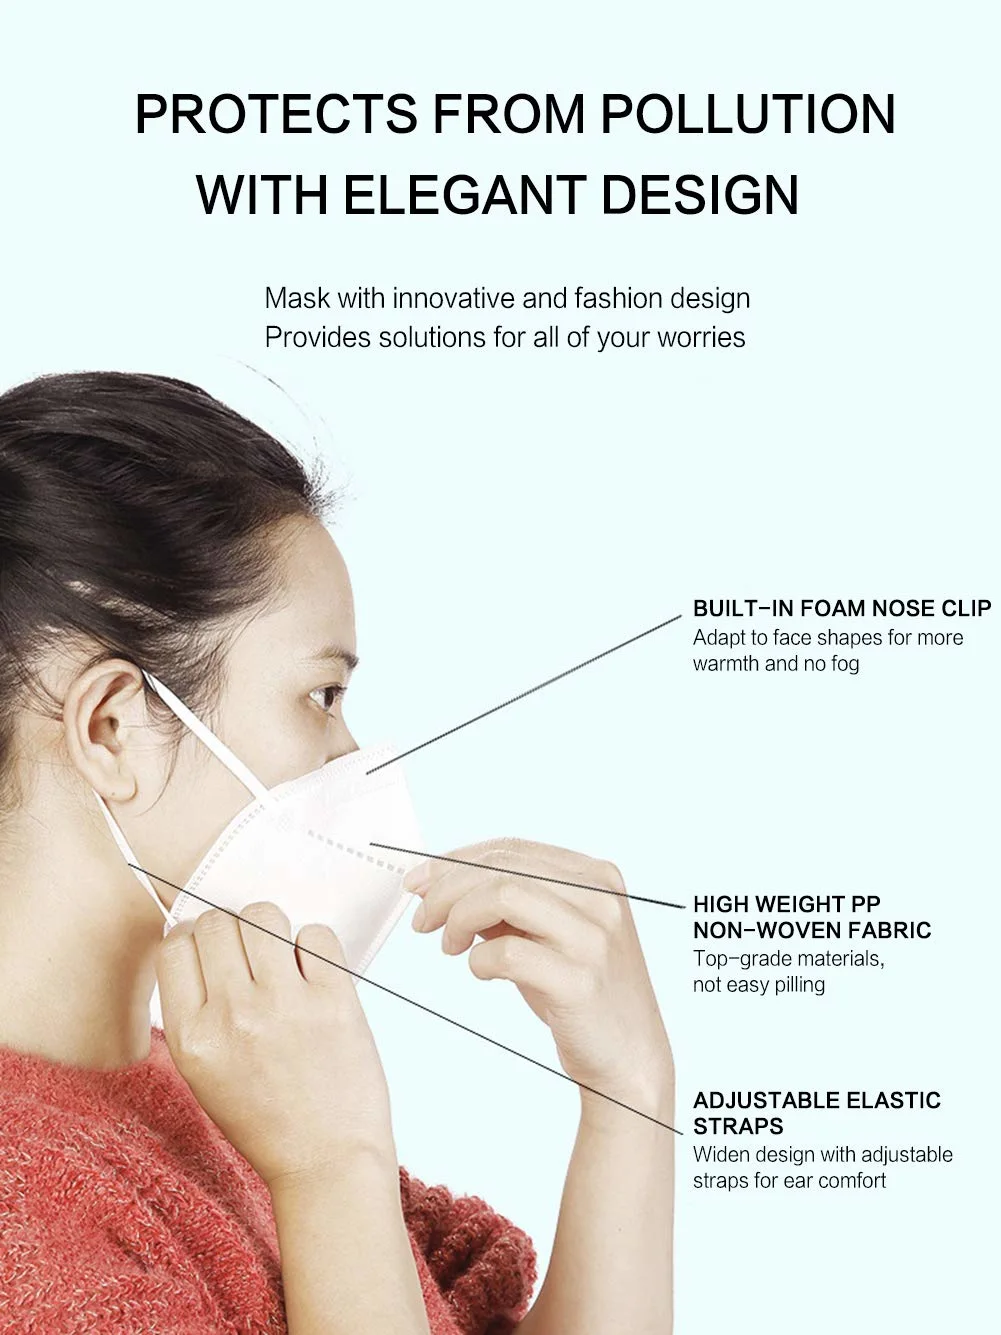 10 PCS Masks Dustproof Anti-Fog Breathable Face Mouth Masks 95% Filtration Masks Safety Respirator